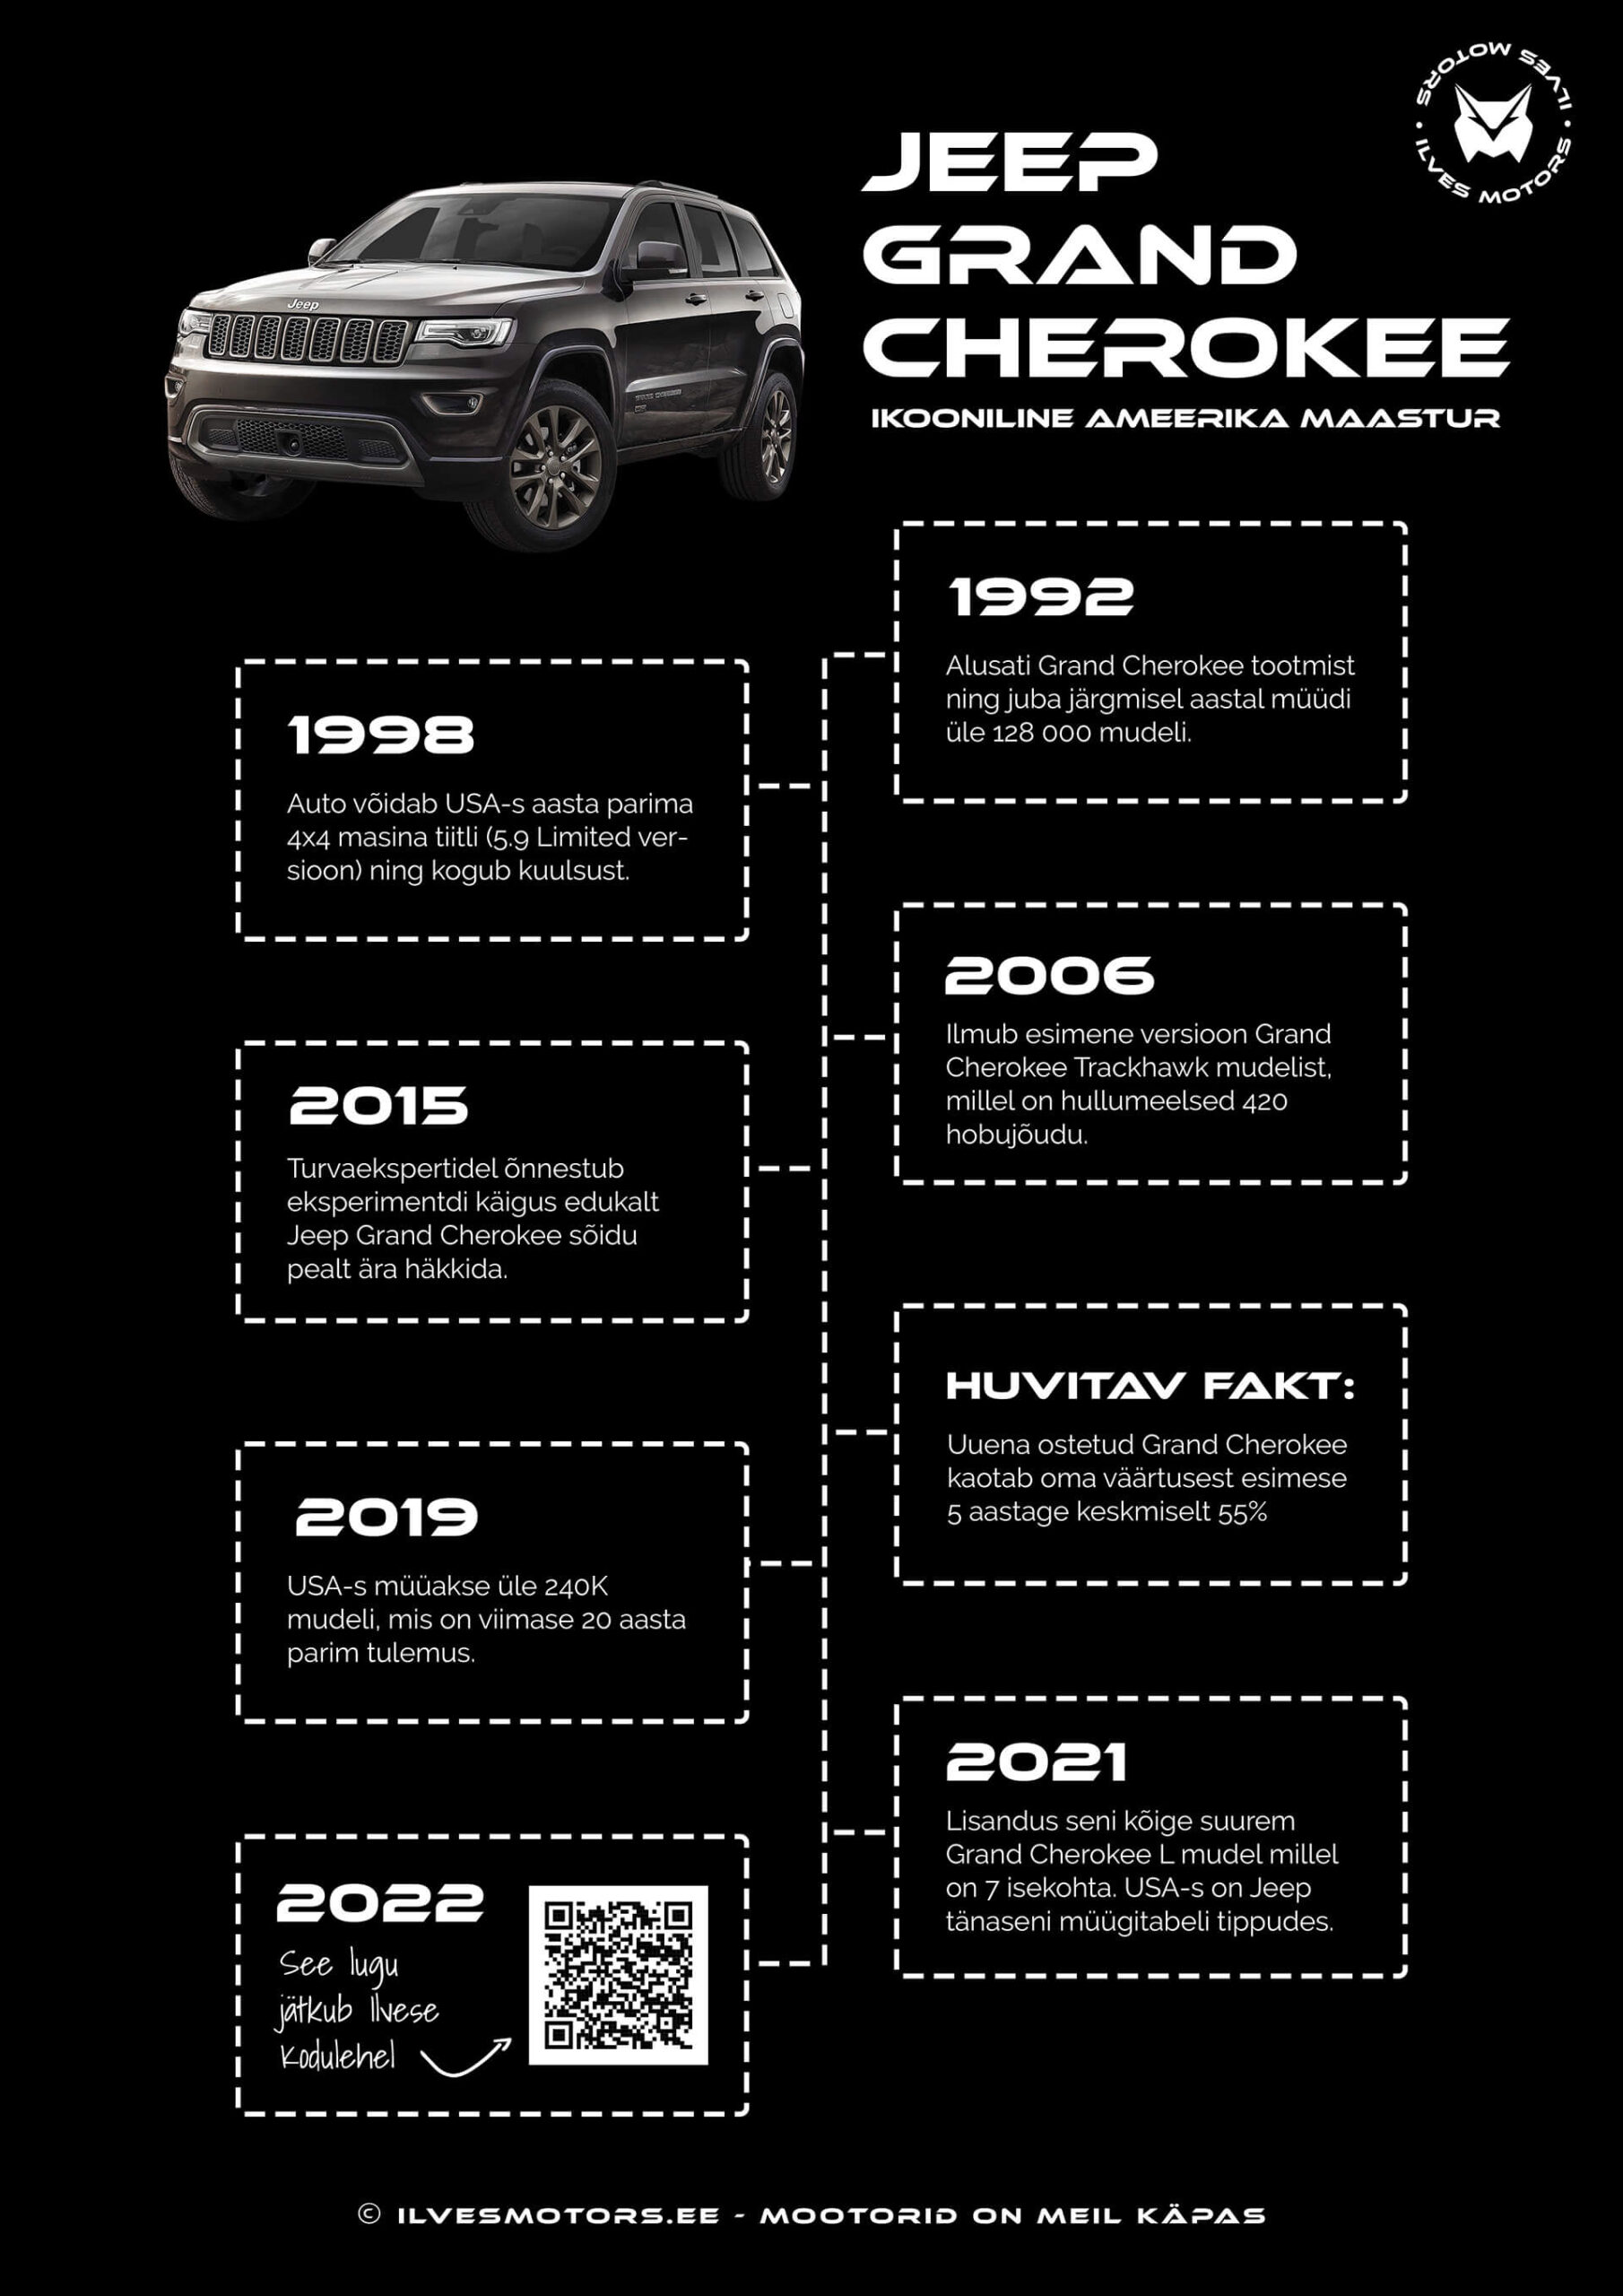 Jeep grand Cherokee ajalugu ja faktid